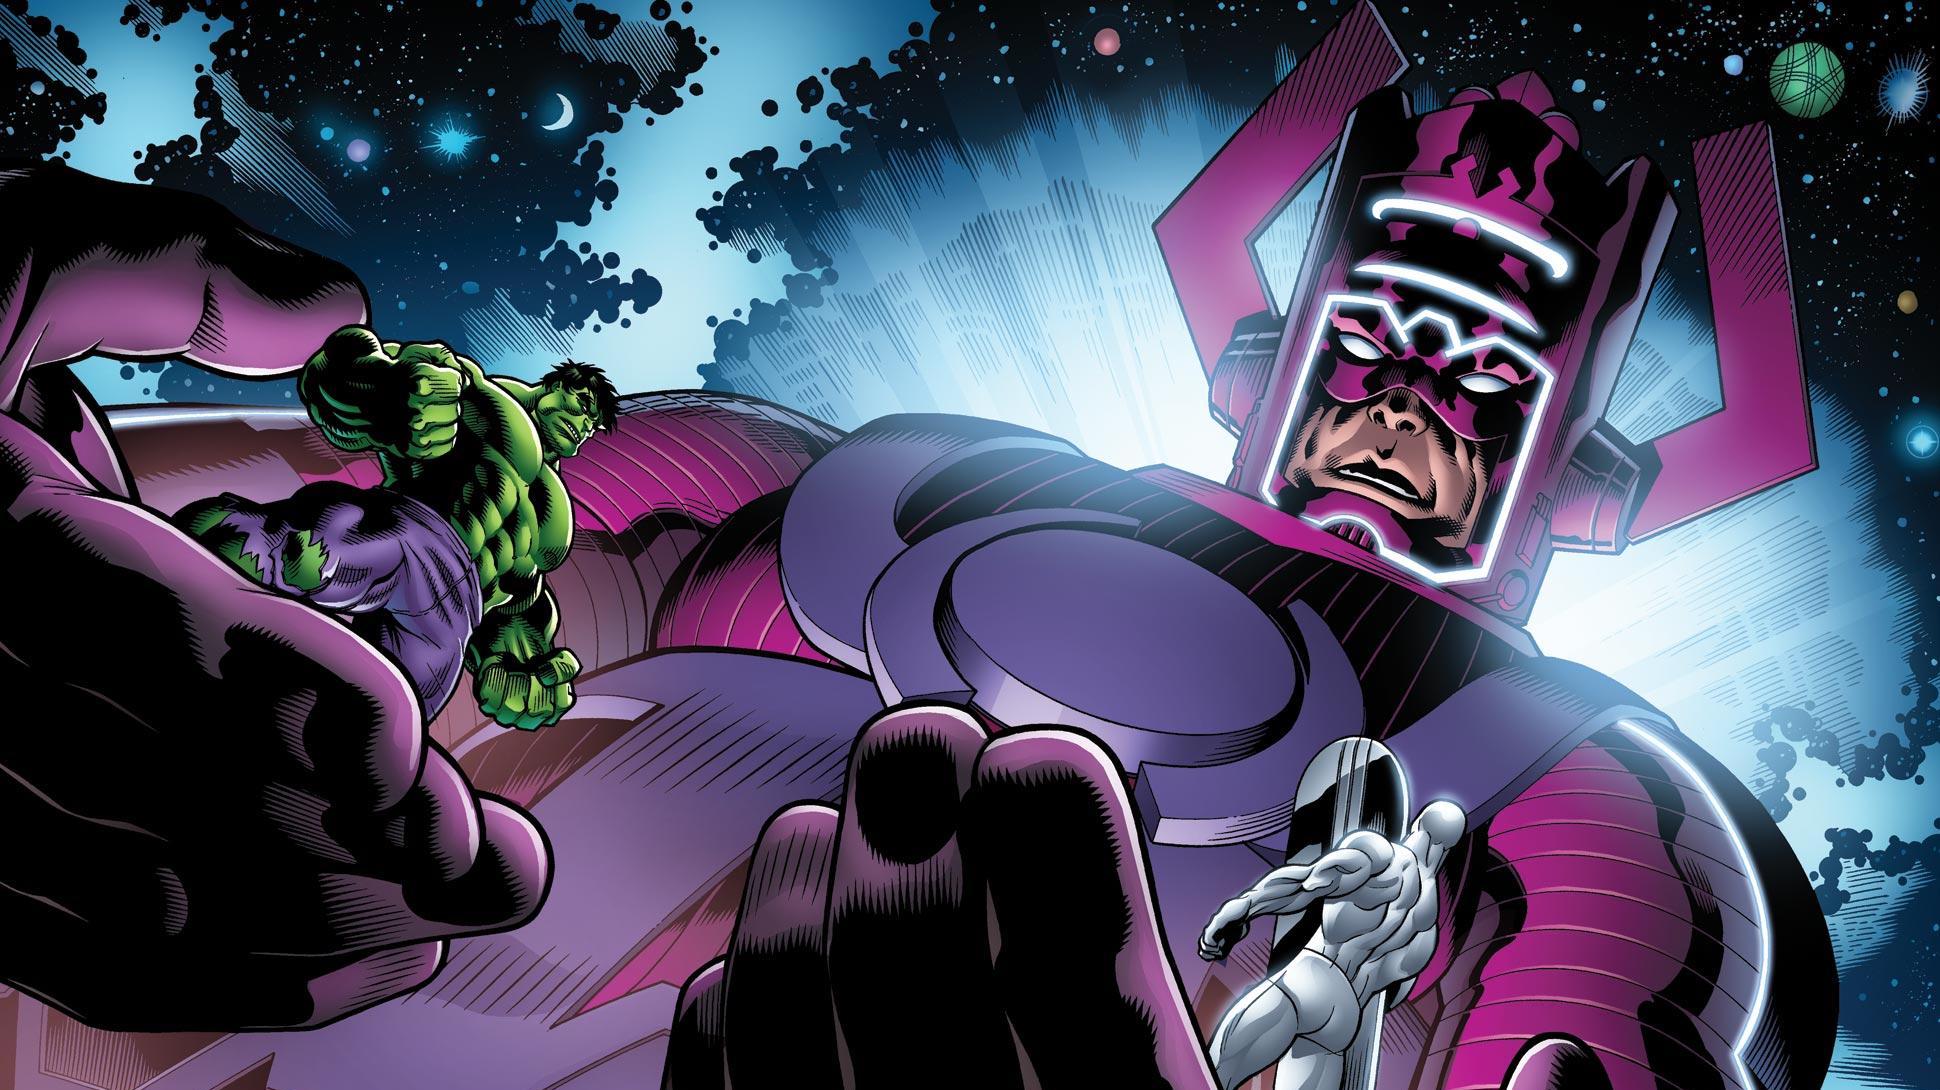 Doctor Doom Supervillain Marvel Comics Wallpapers